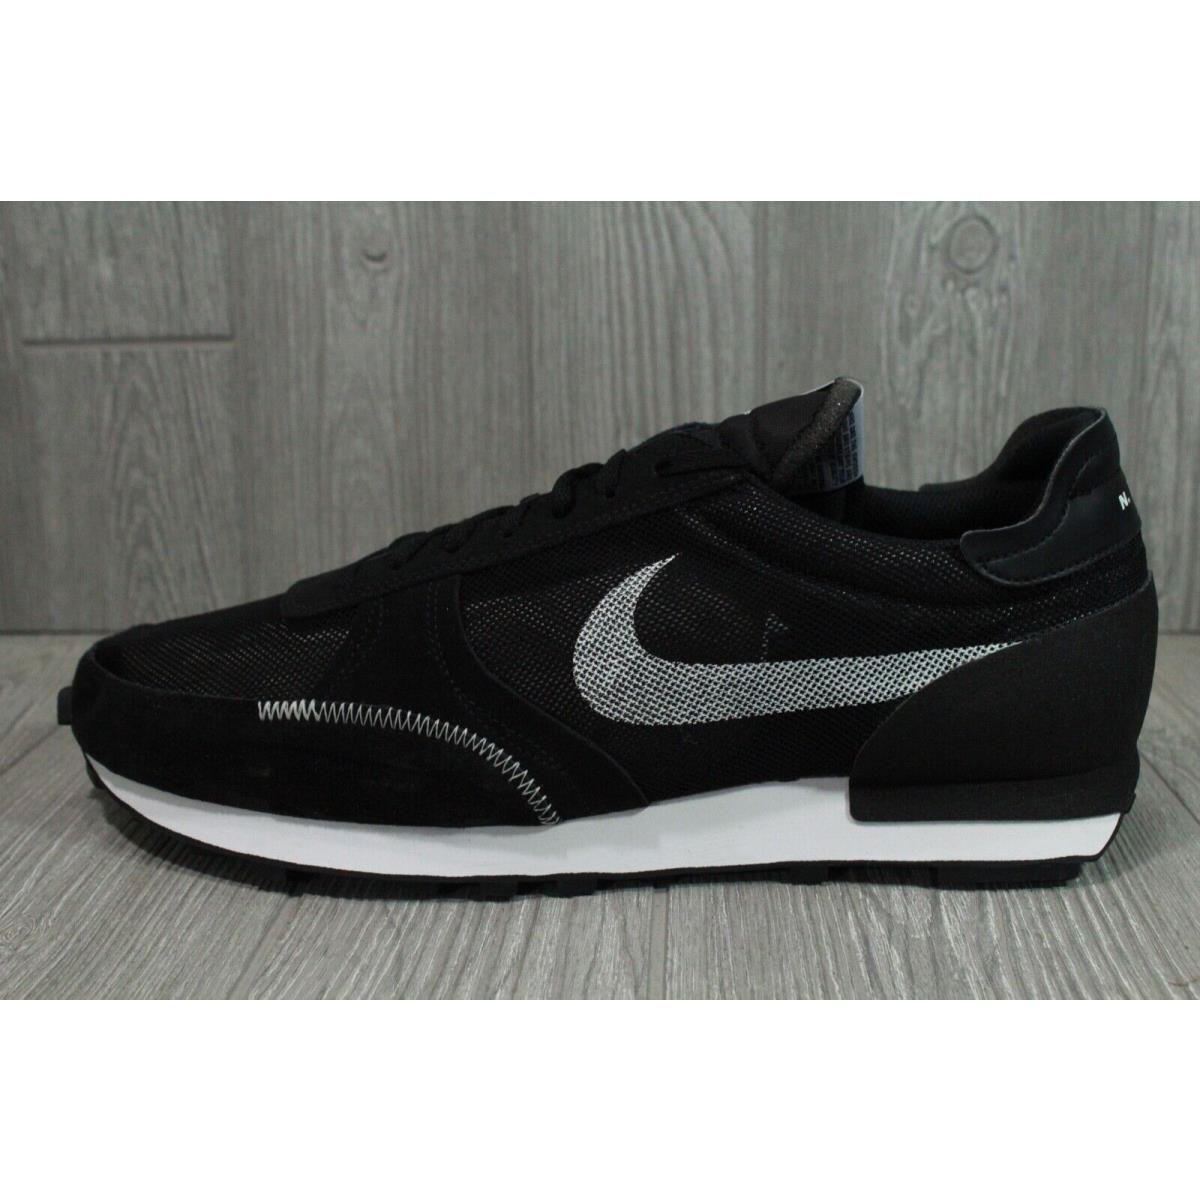 Nike Dbreak-type Black White Shoes Mens Size 14 15 CJ1156-003